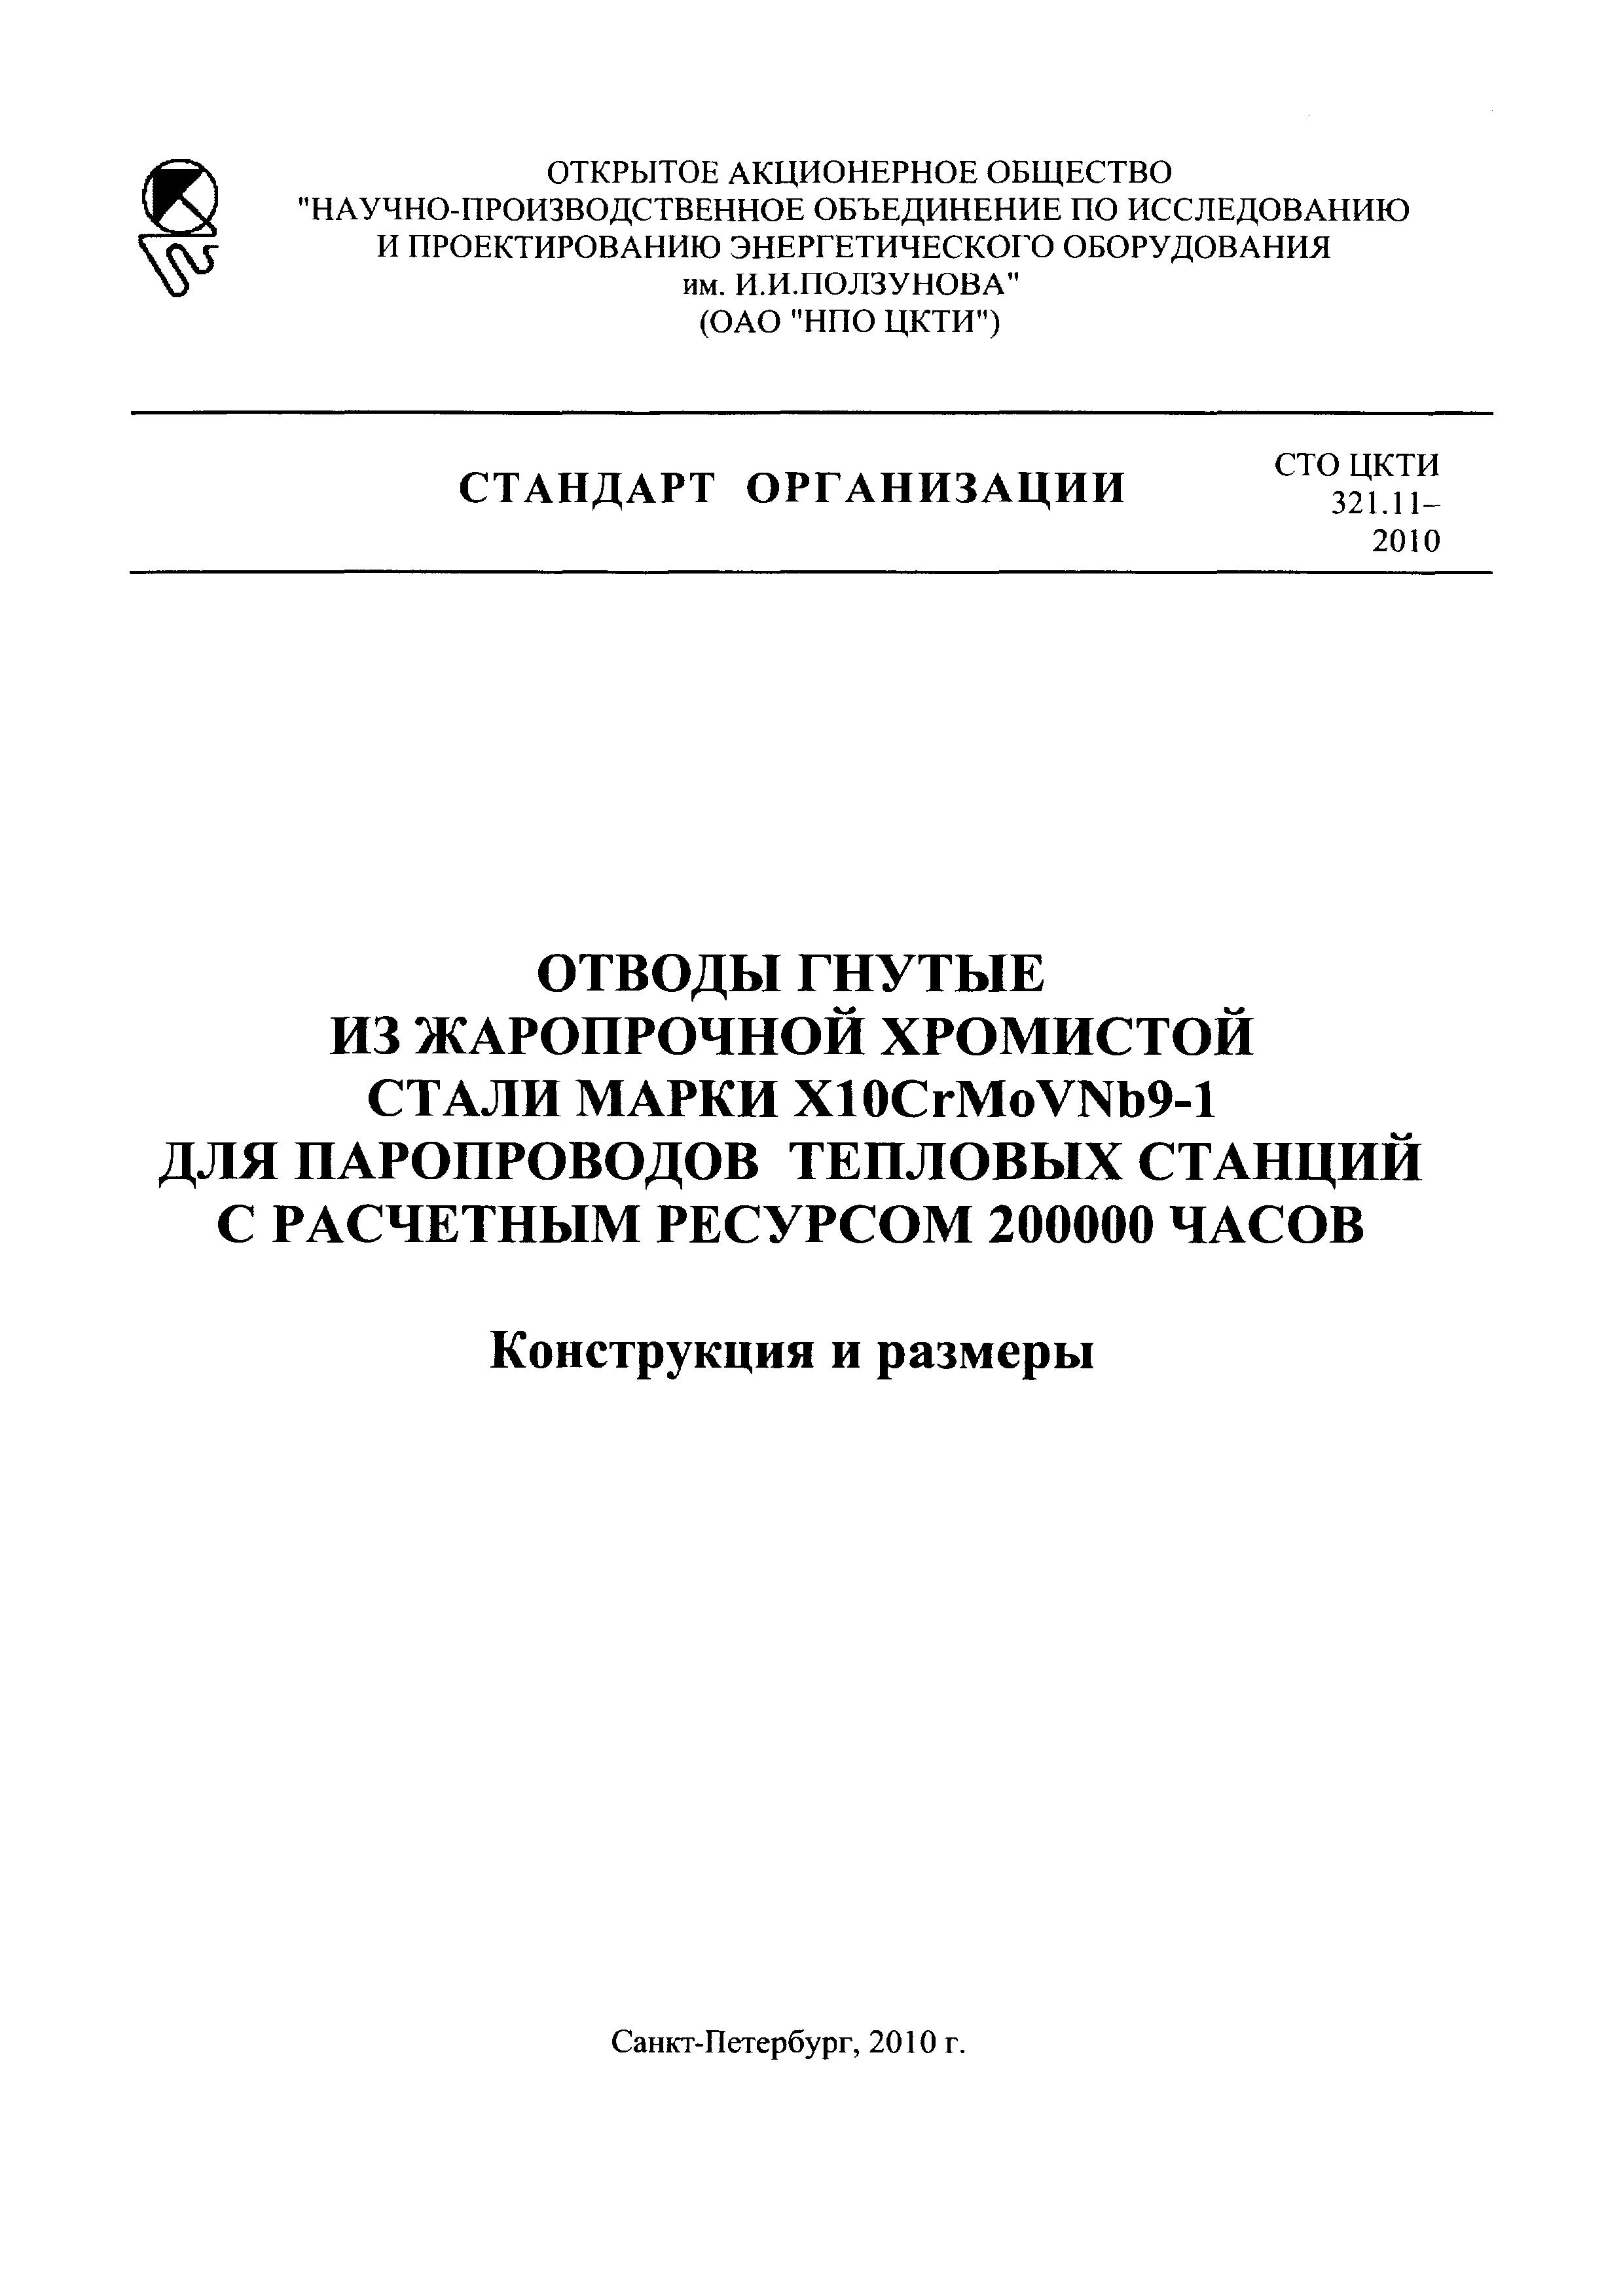 СТО ЦКТИ 321.11-2010